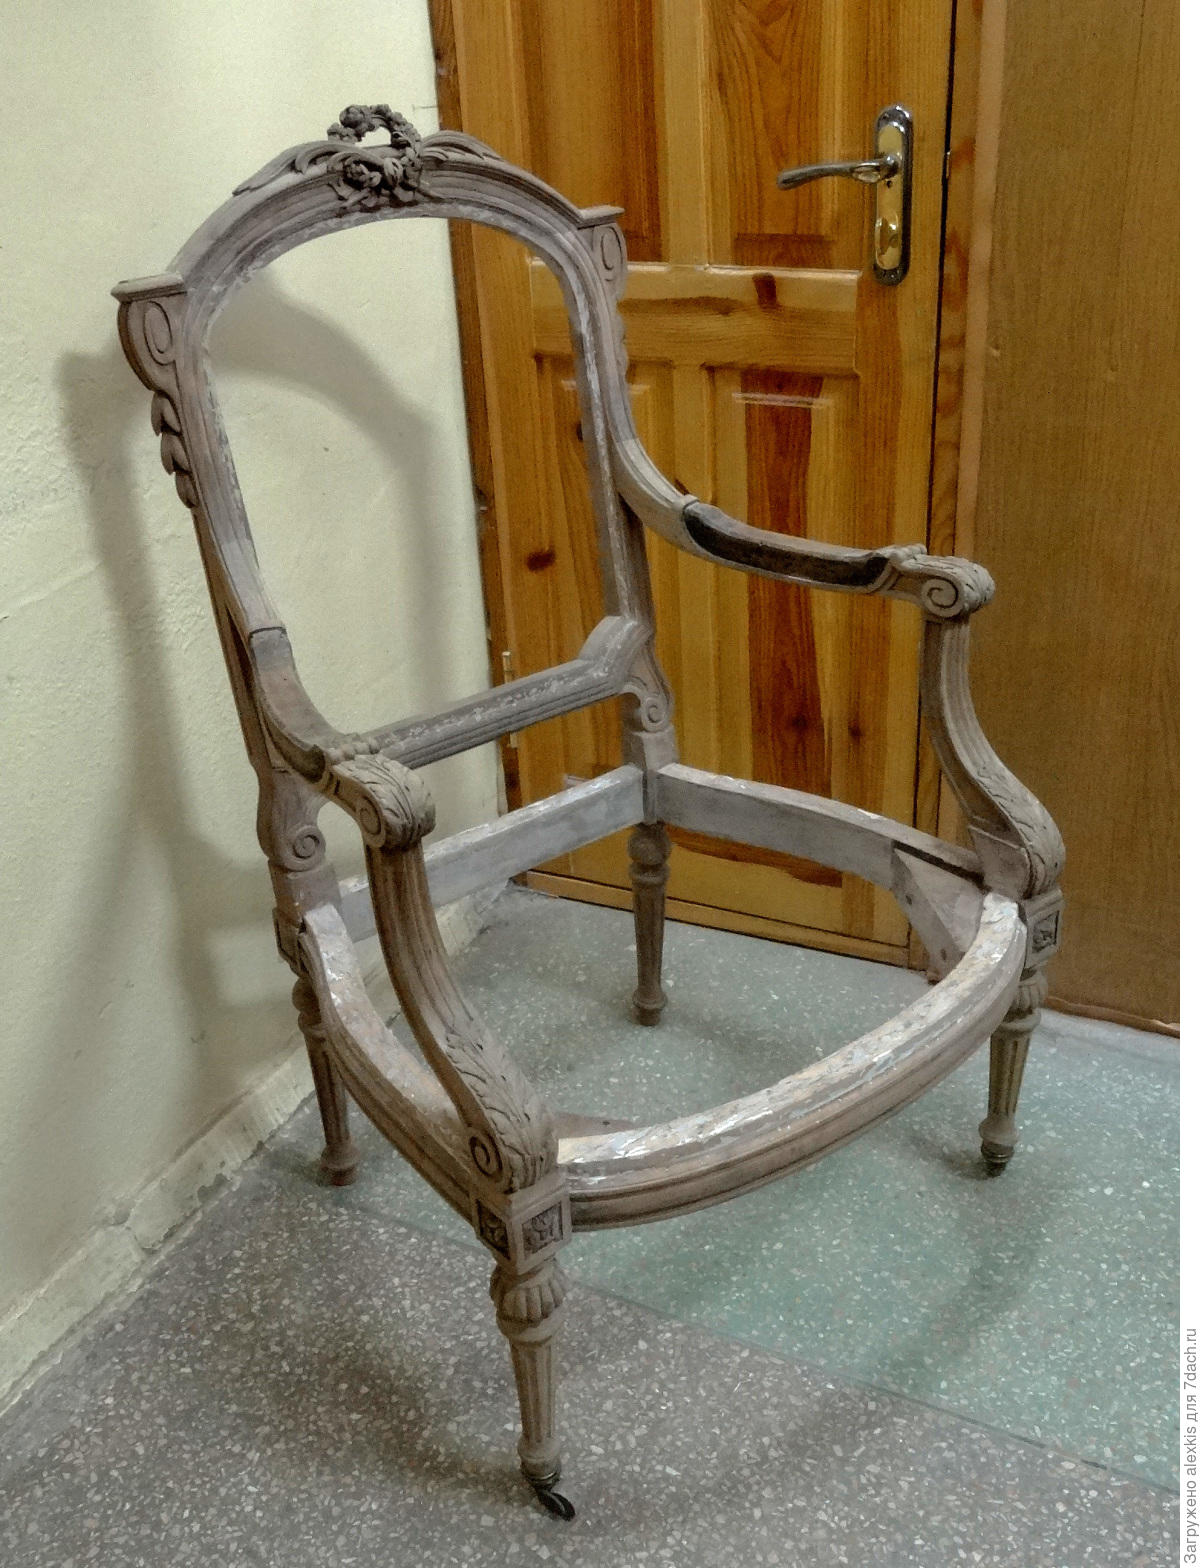 Реставрация кресла ракушка своими руками пошаговая инструкция